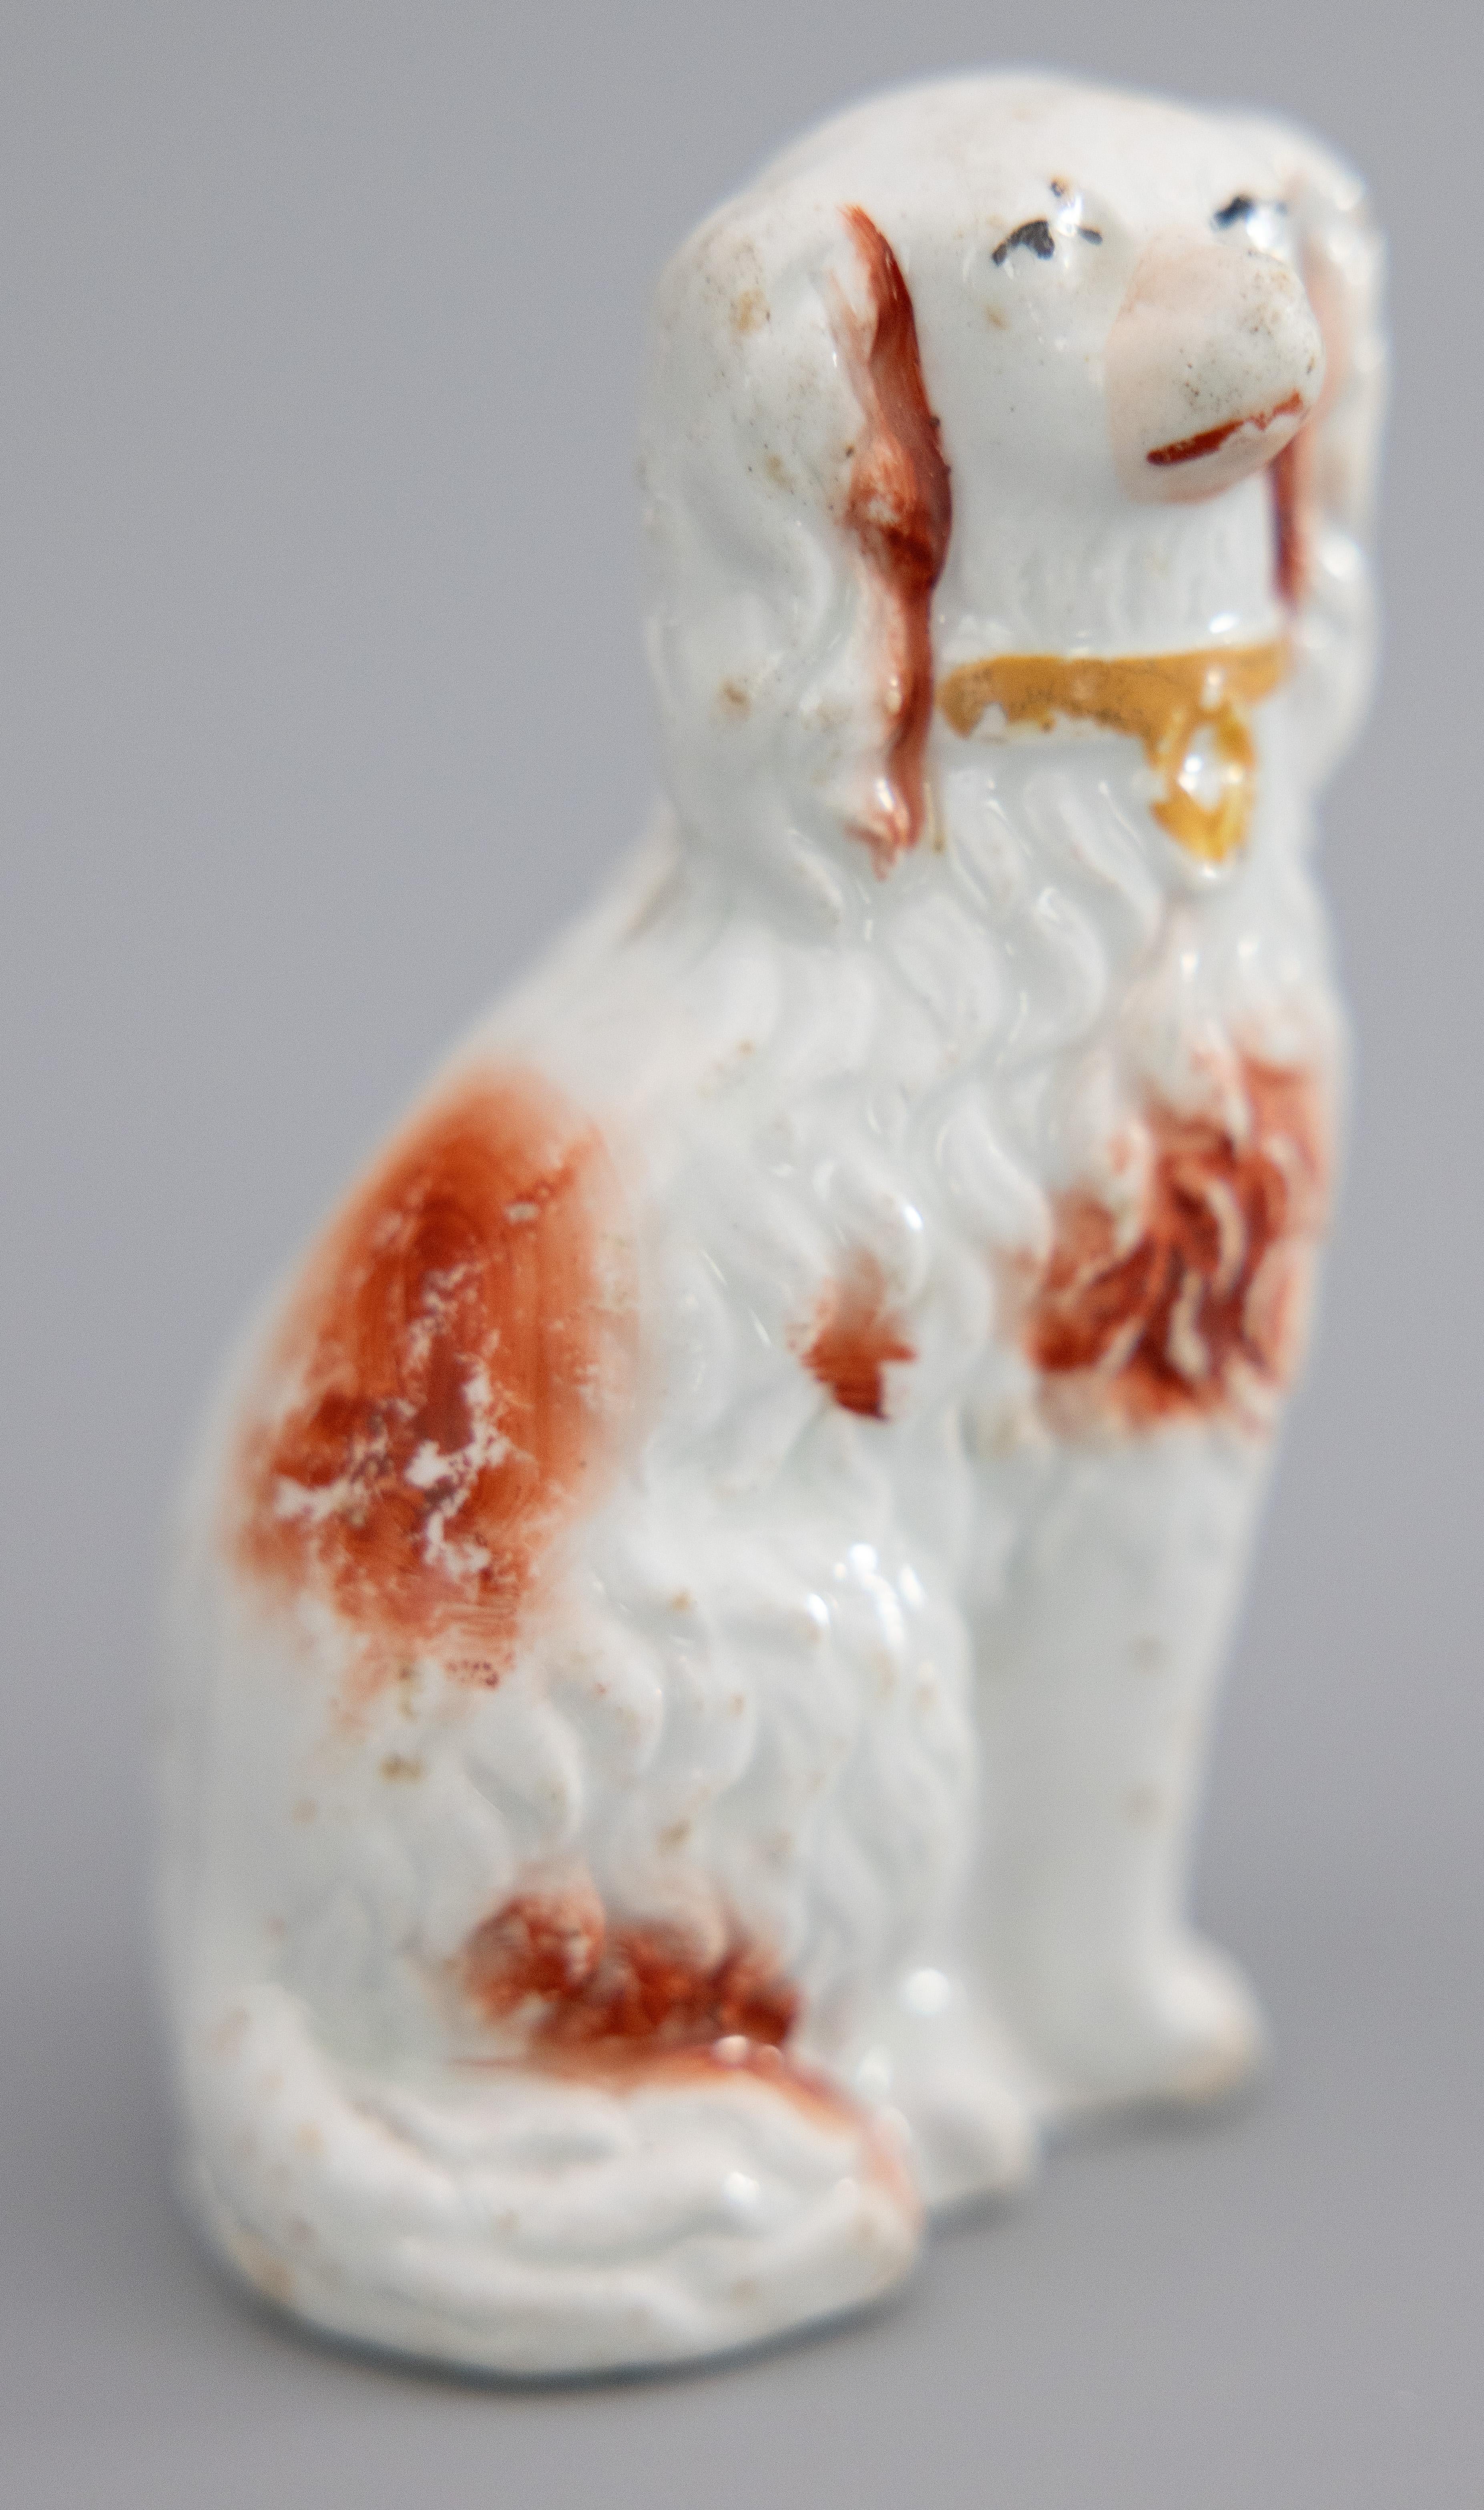 Superbe figurine ancienne du 19e siècle en Staffordshire, représentant un petit épagneul roux. Cette pièce est peinte à la main avec des détails raffinés et conviendrait parfaitement à l'amoureux des chiens ou au collectionneur.

DIMENSIONS
2,25ʺW ×